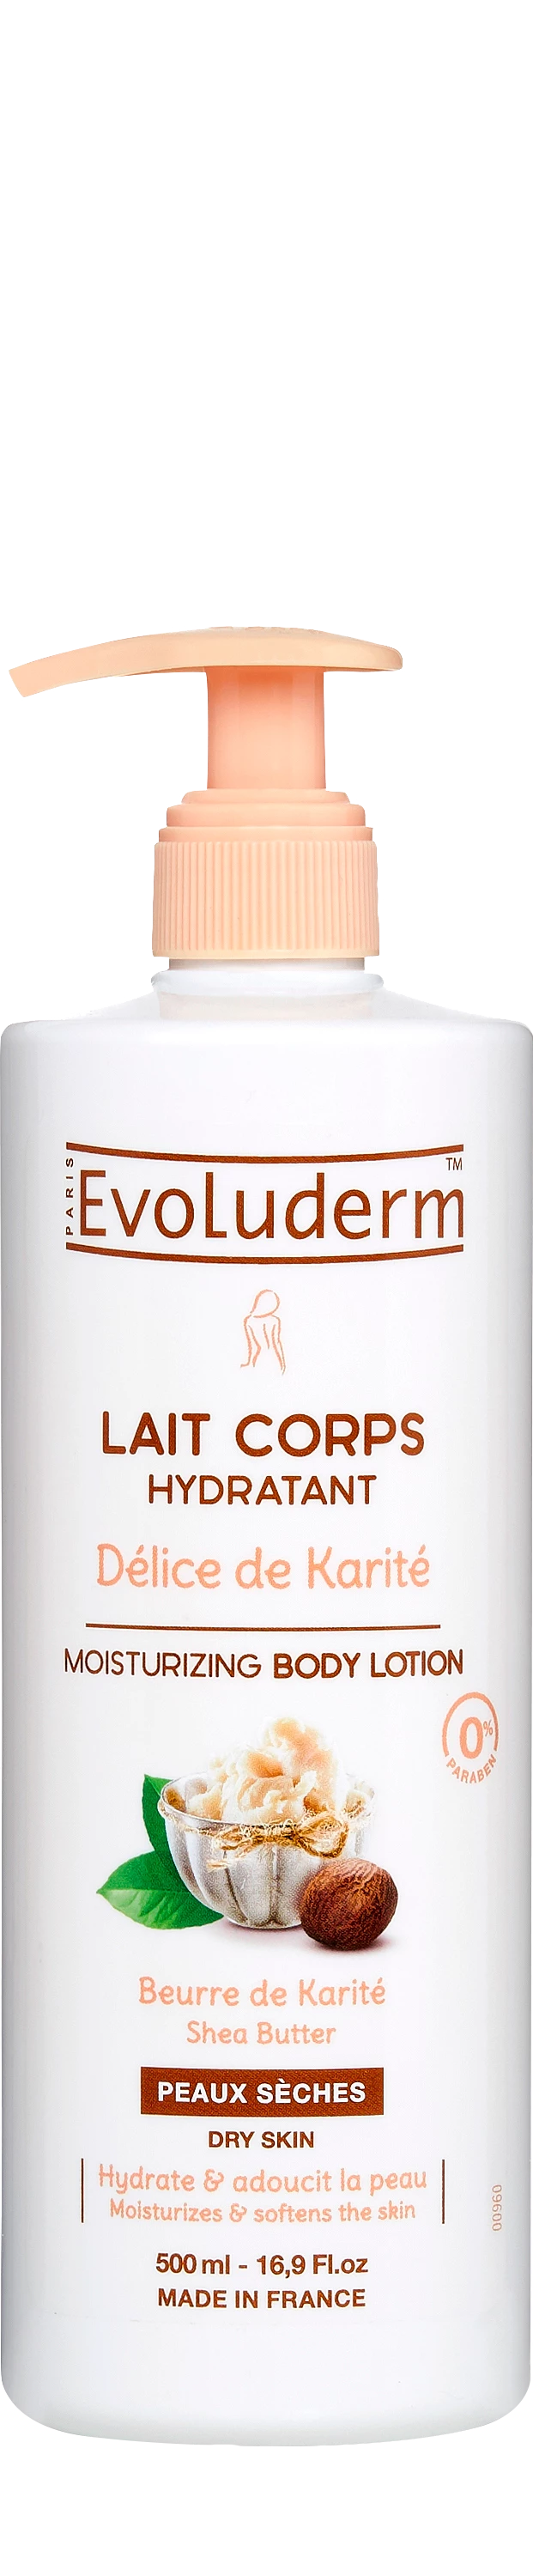 Lait Corps Hydratant Délice De Karité 500ml - Evoluderm